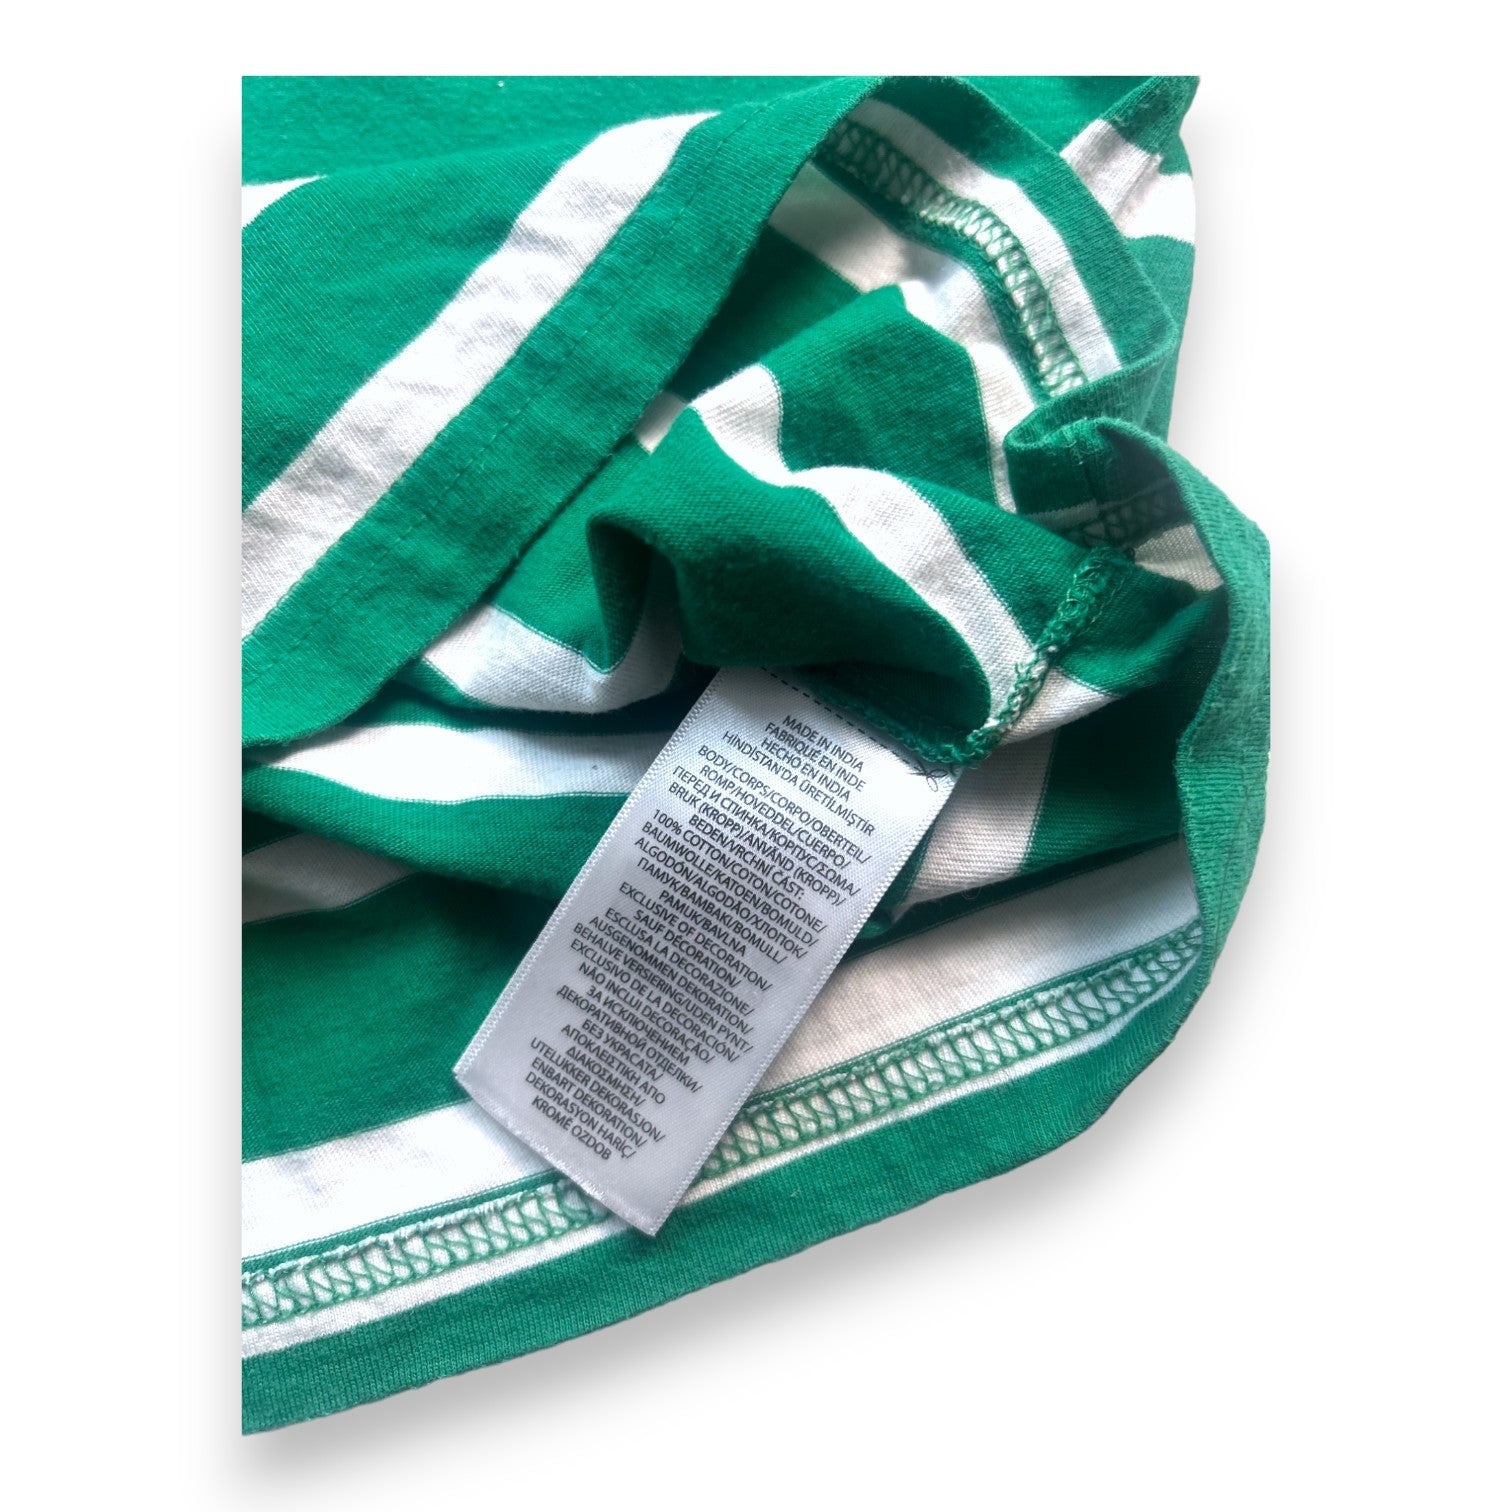 RALPH LAUREN - T-shirt vert et blanc à rayure - 2 ans